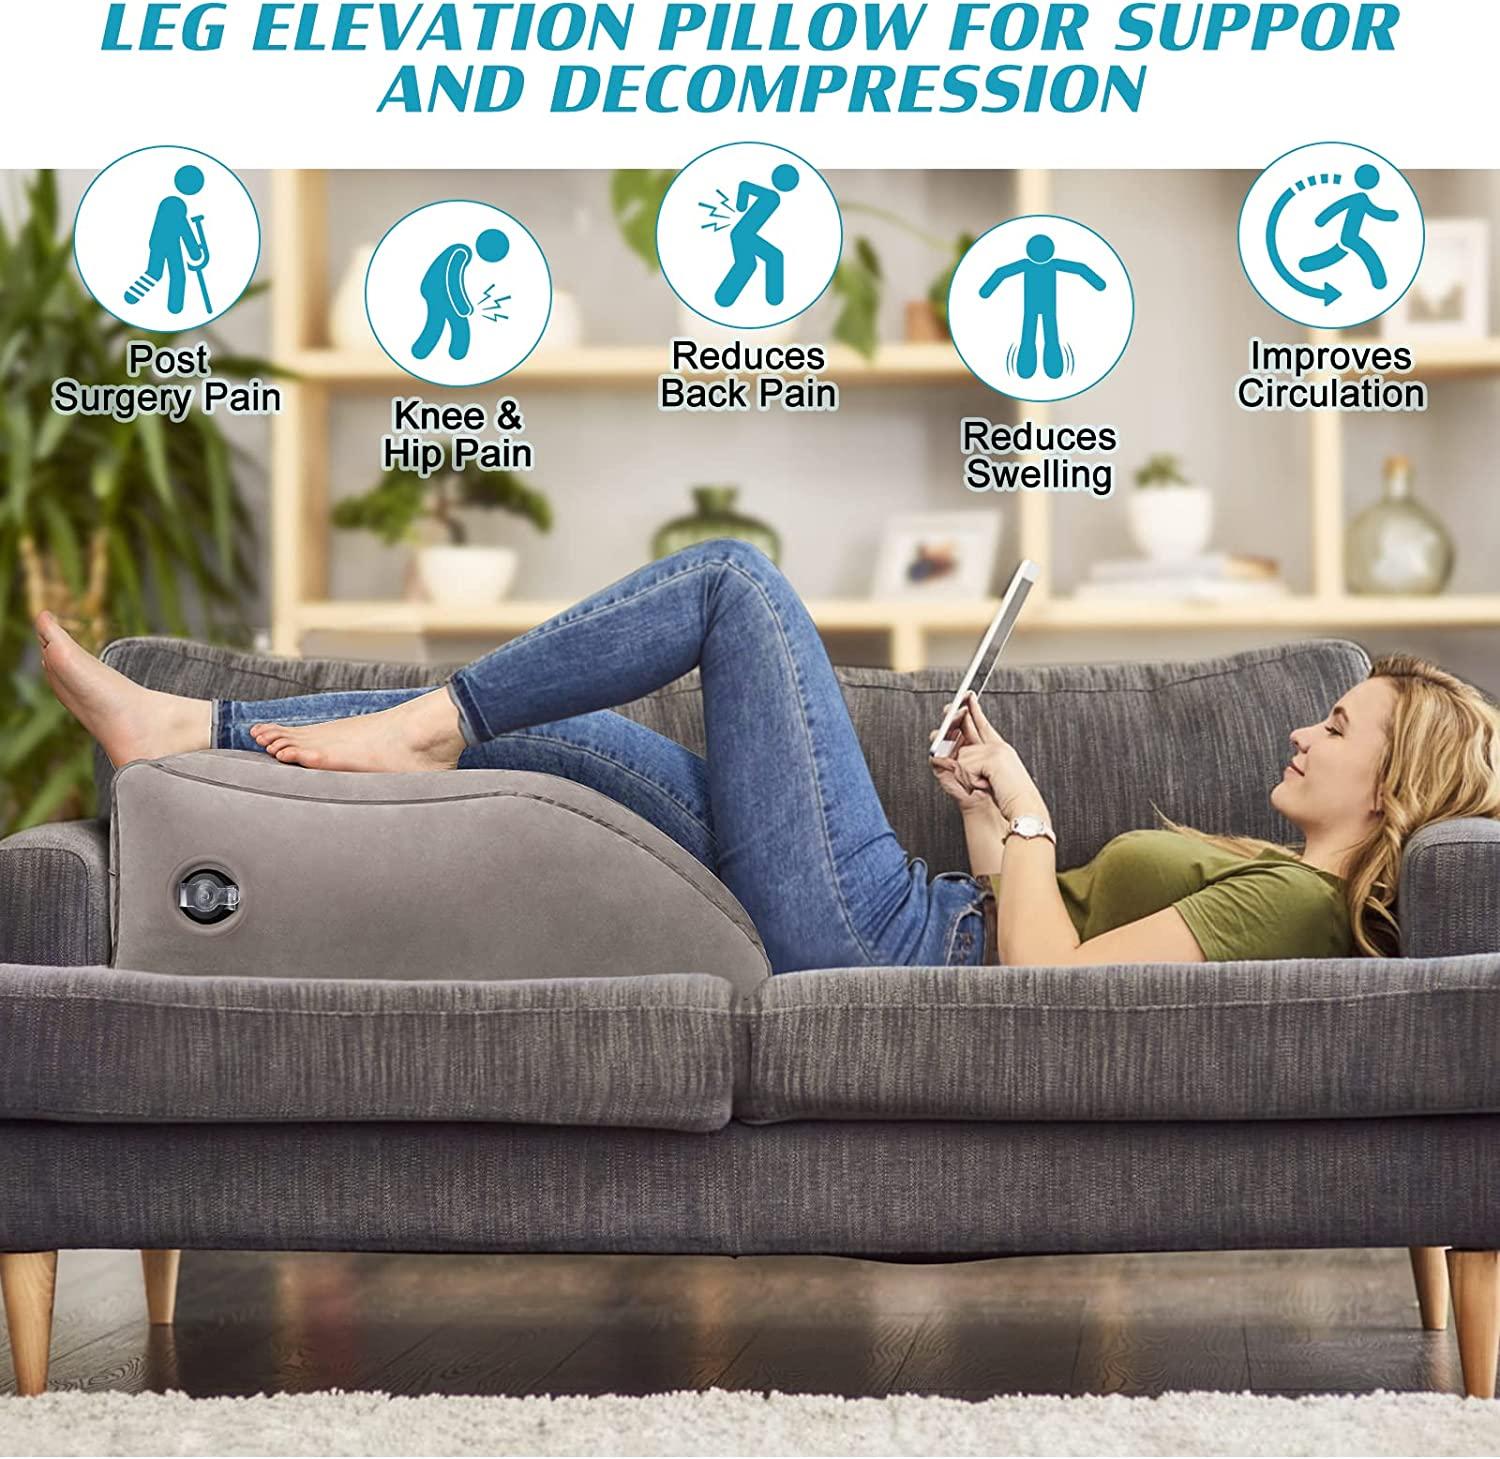 Knee & Leg Support Pillow